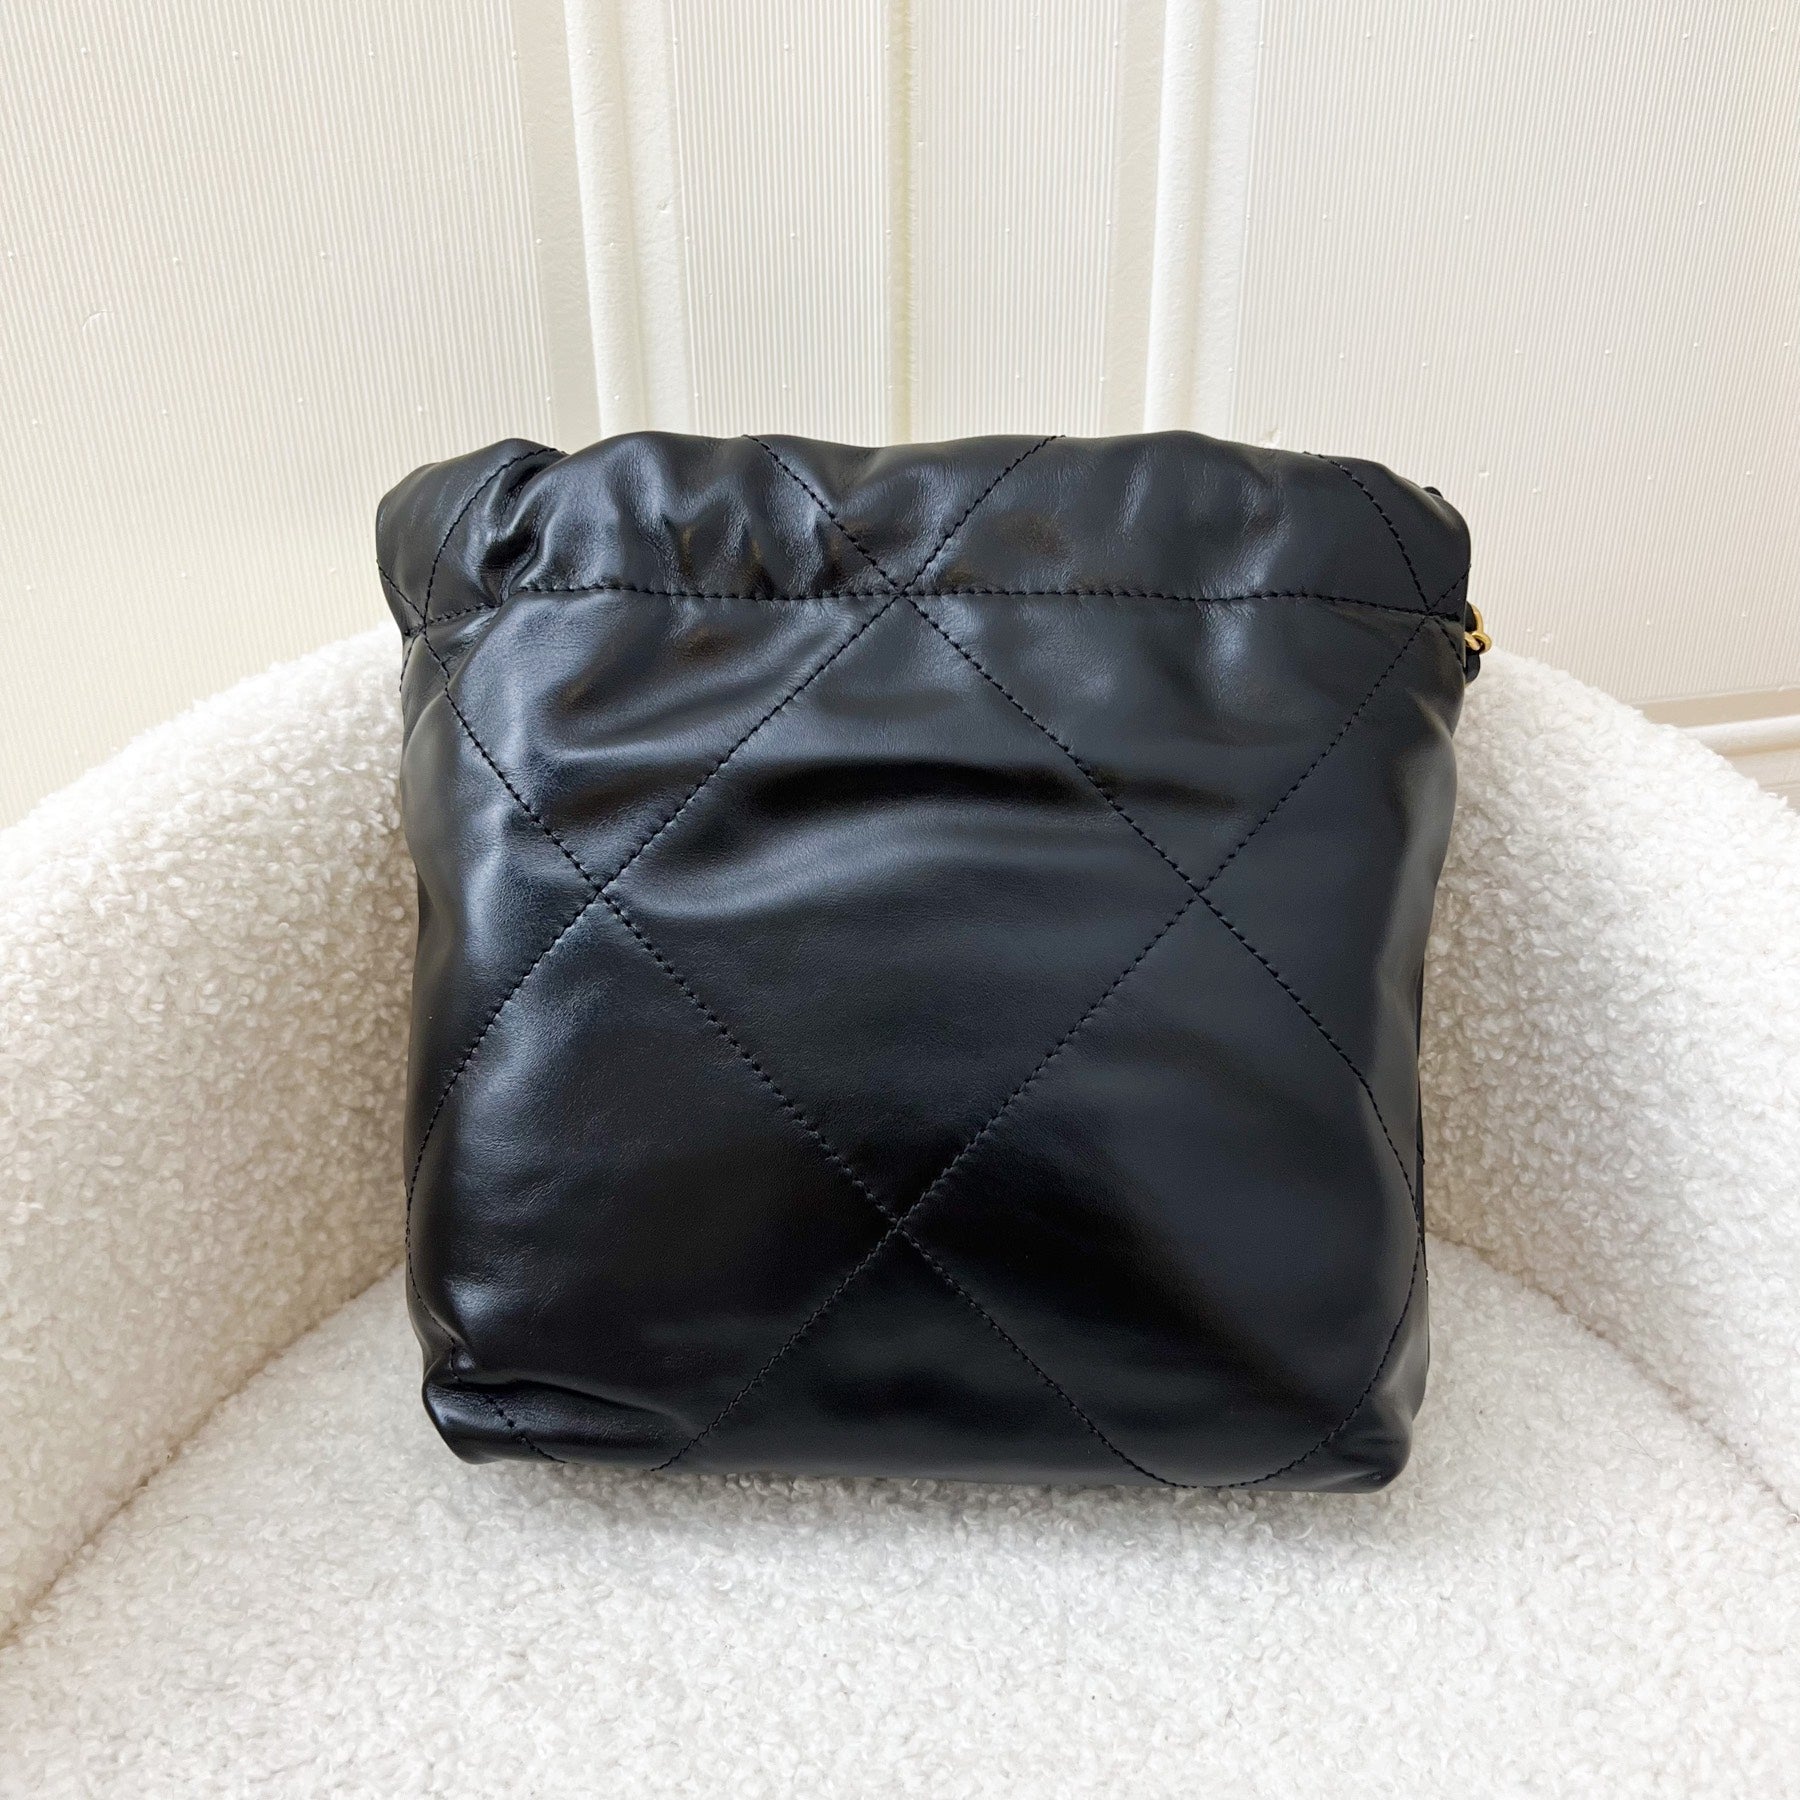 Chanel 22 Mini Hobo Handbag in 23B Beige Calfskin and AGHW – Brands Lover